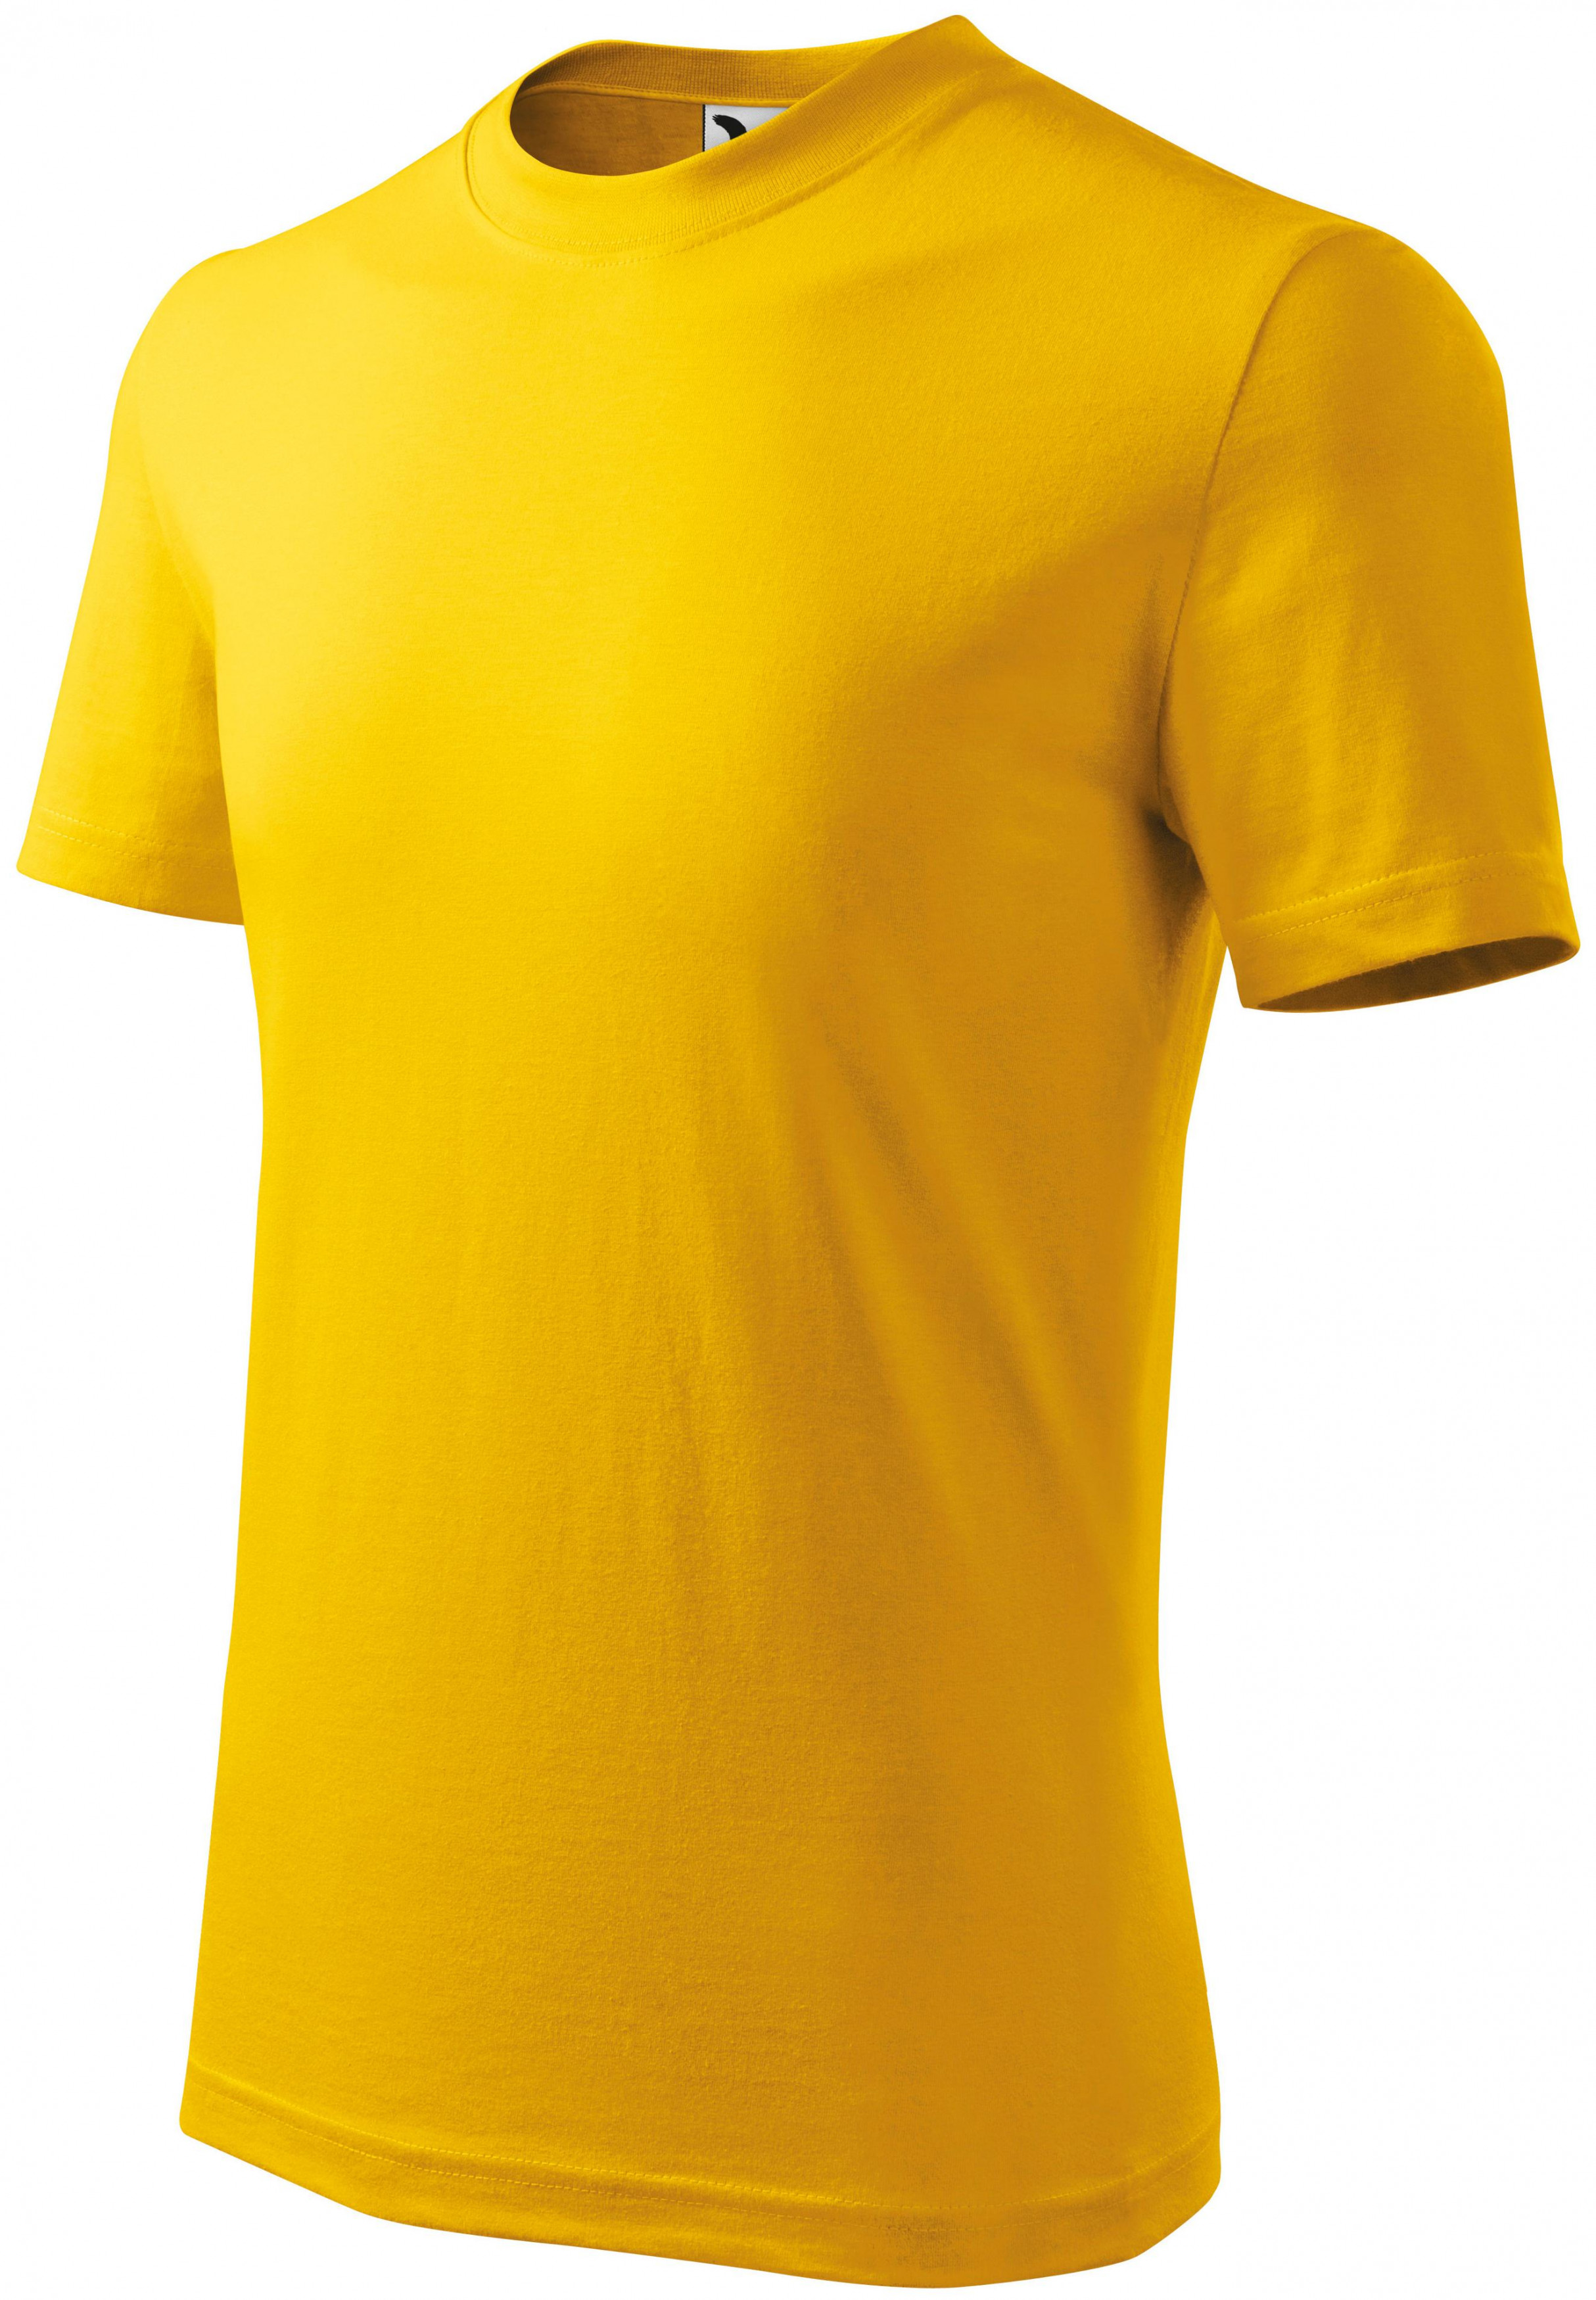 Detské tričko jednoduché, žltá, 134cm / 8rokov